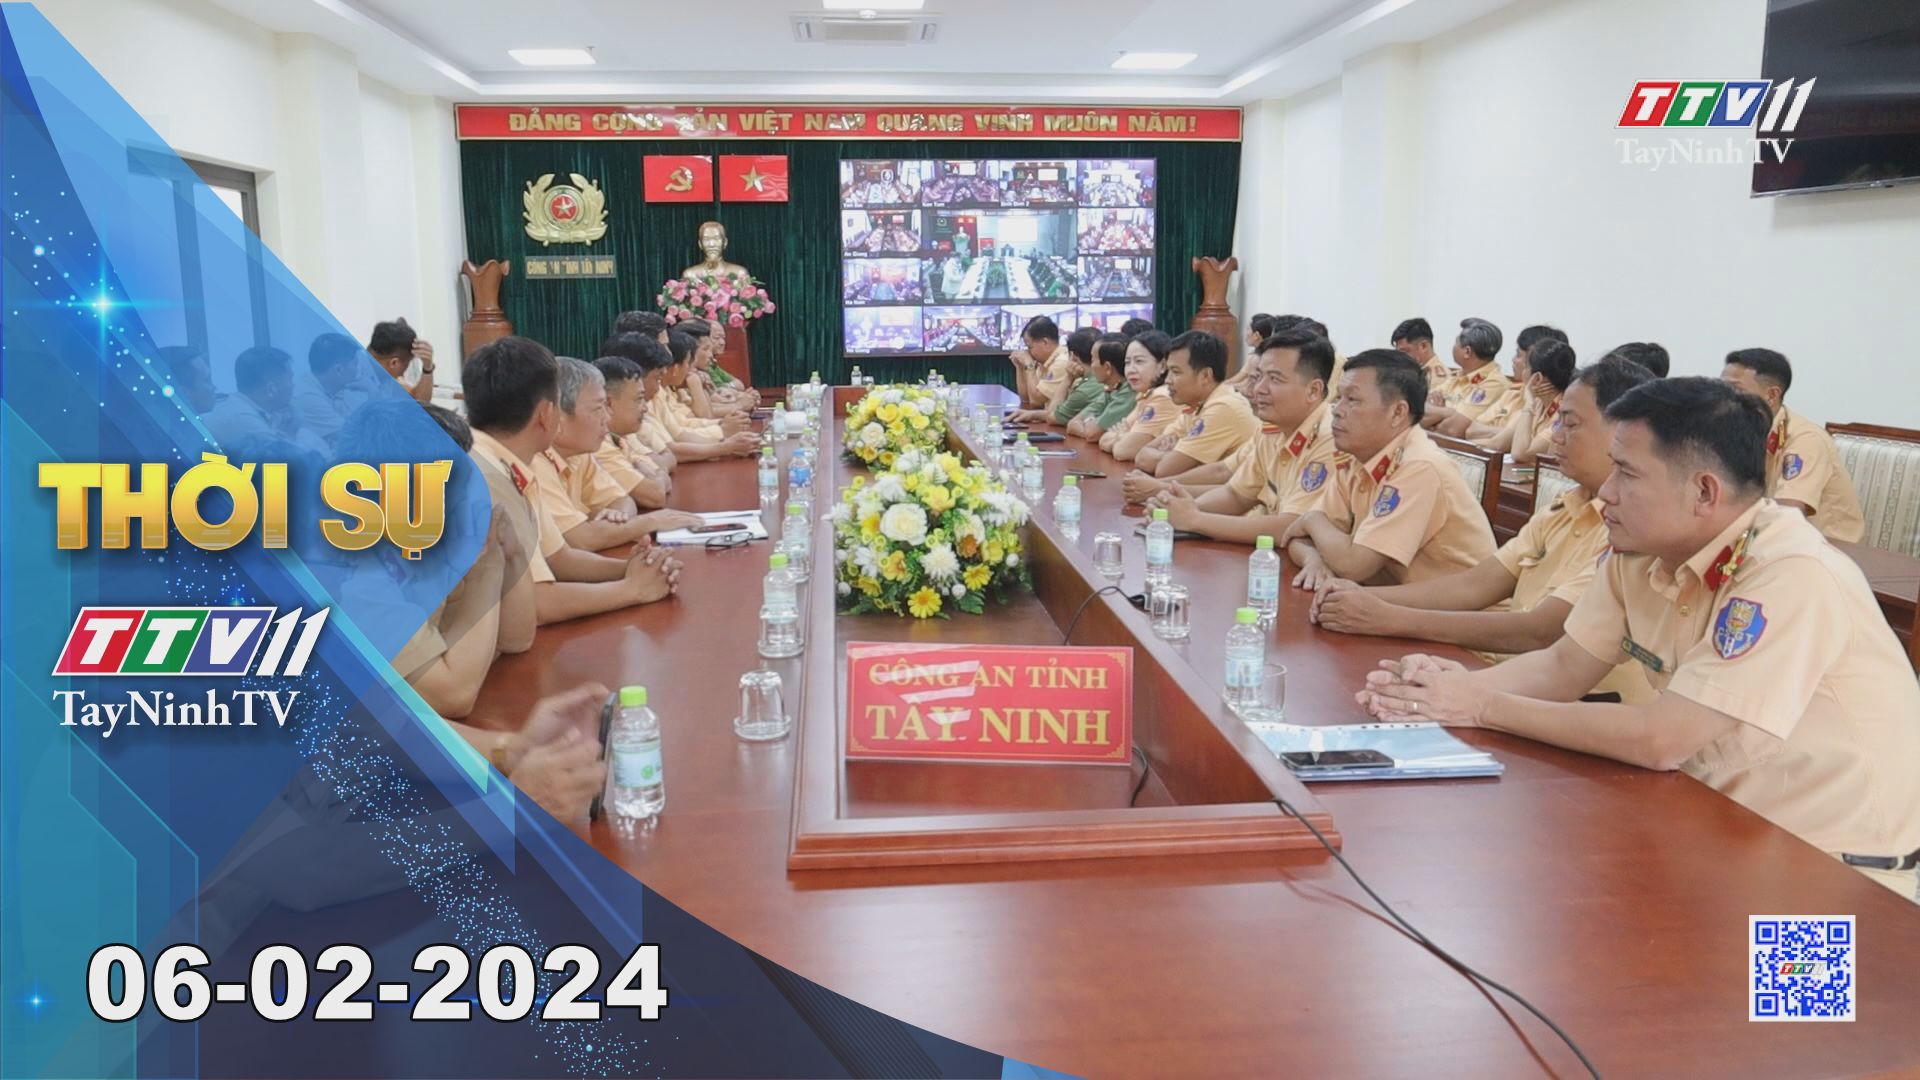 Thời sự Tây Ninh 06-02-2024 | Tin tức hôm nay | TayNinhTV